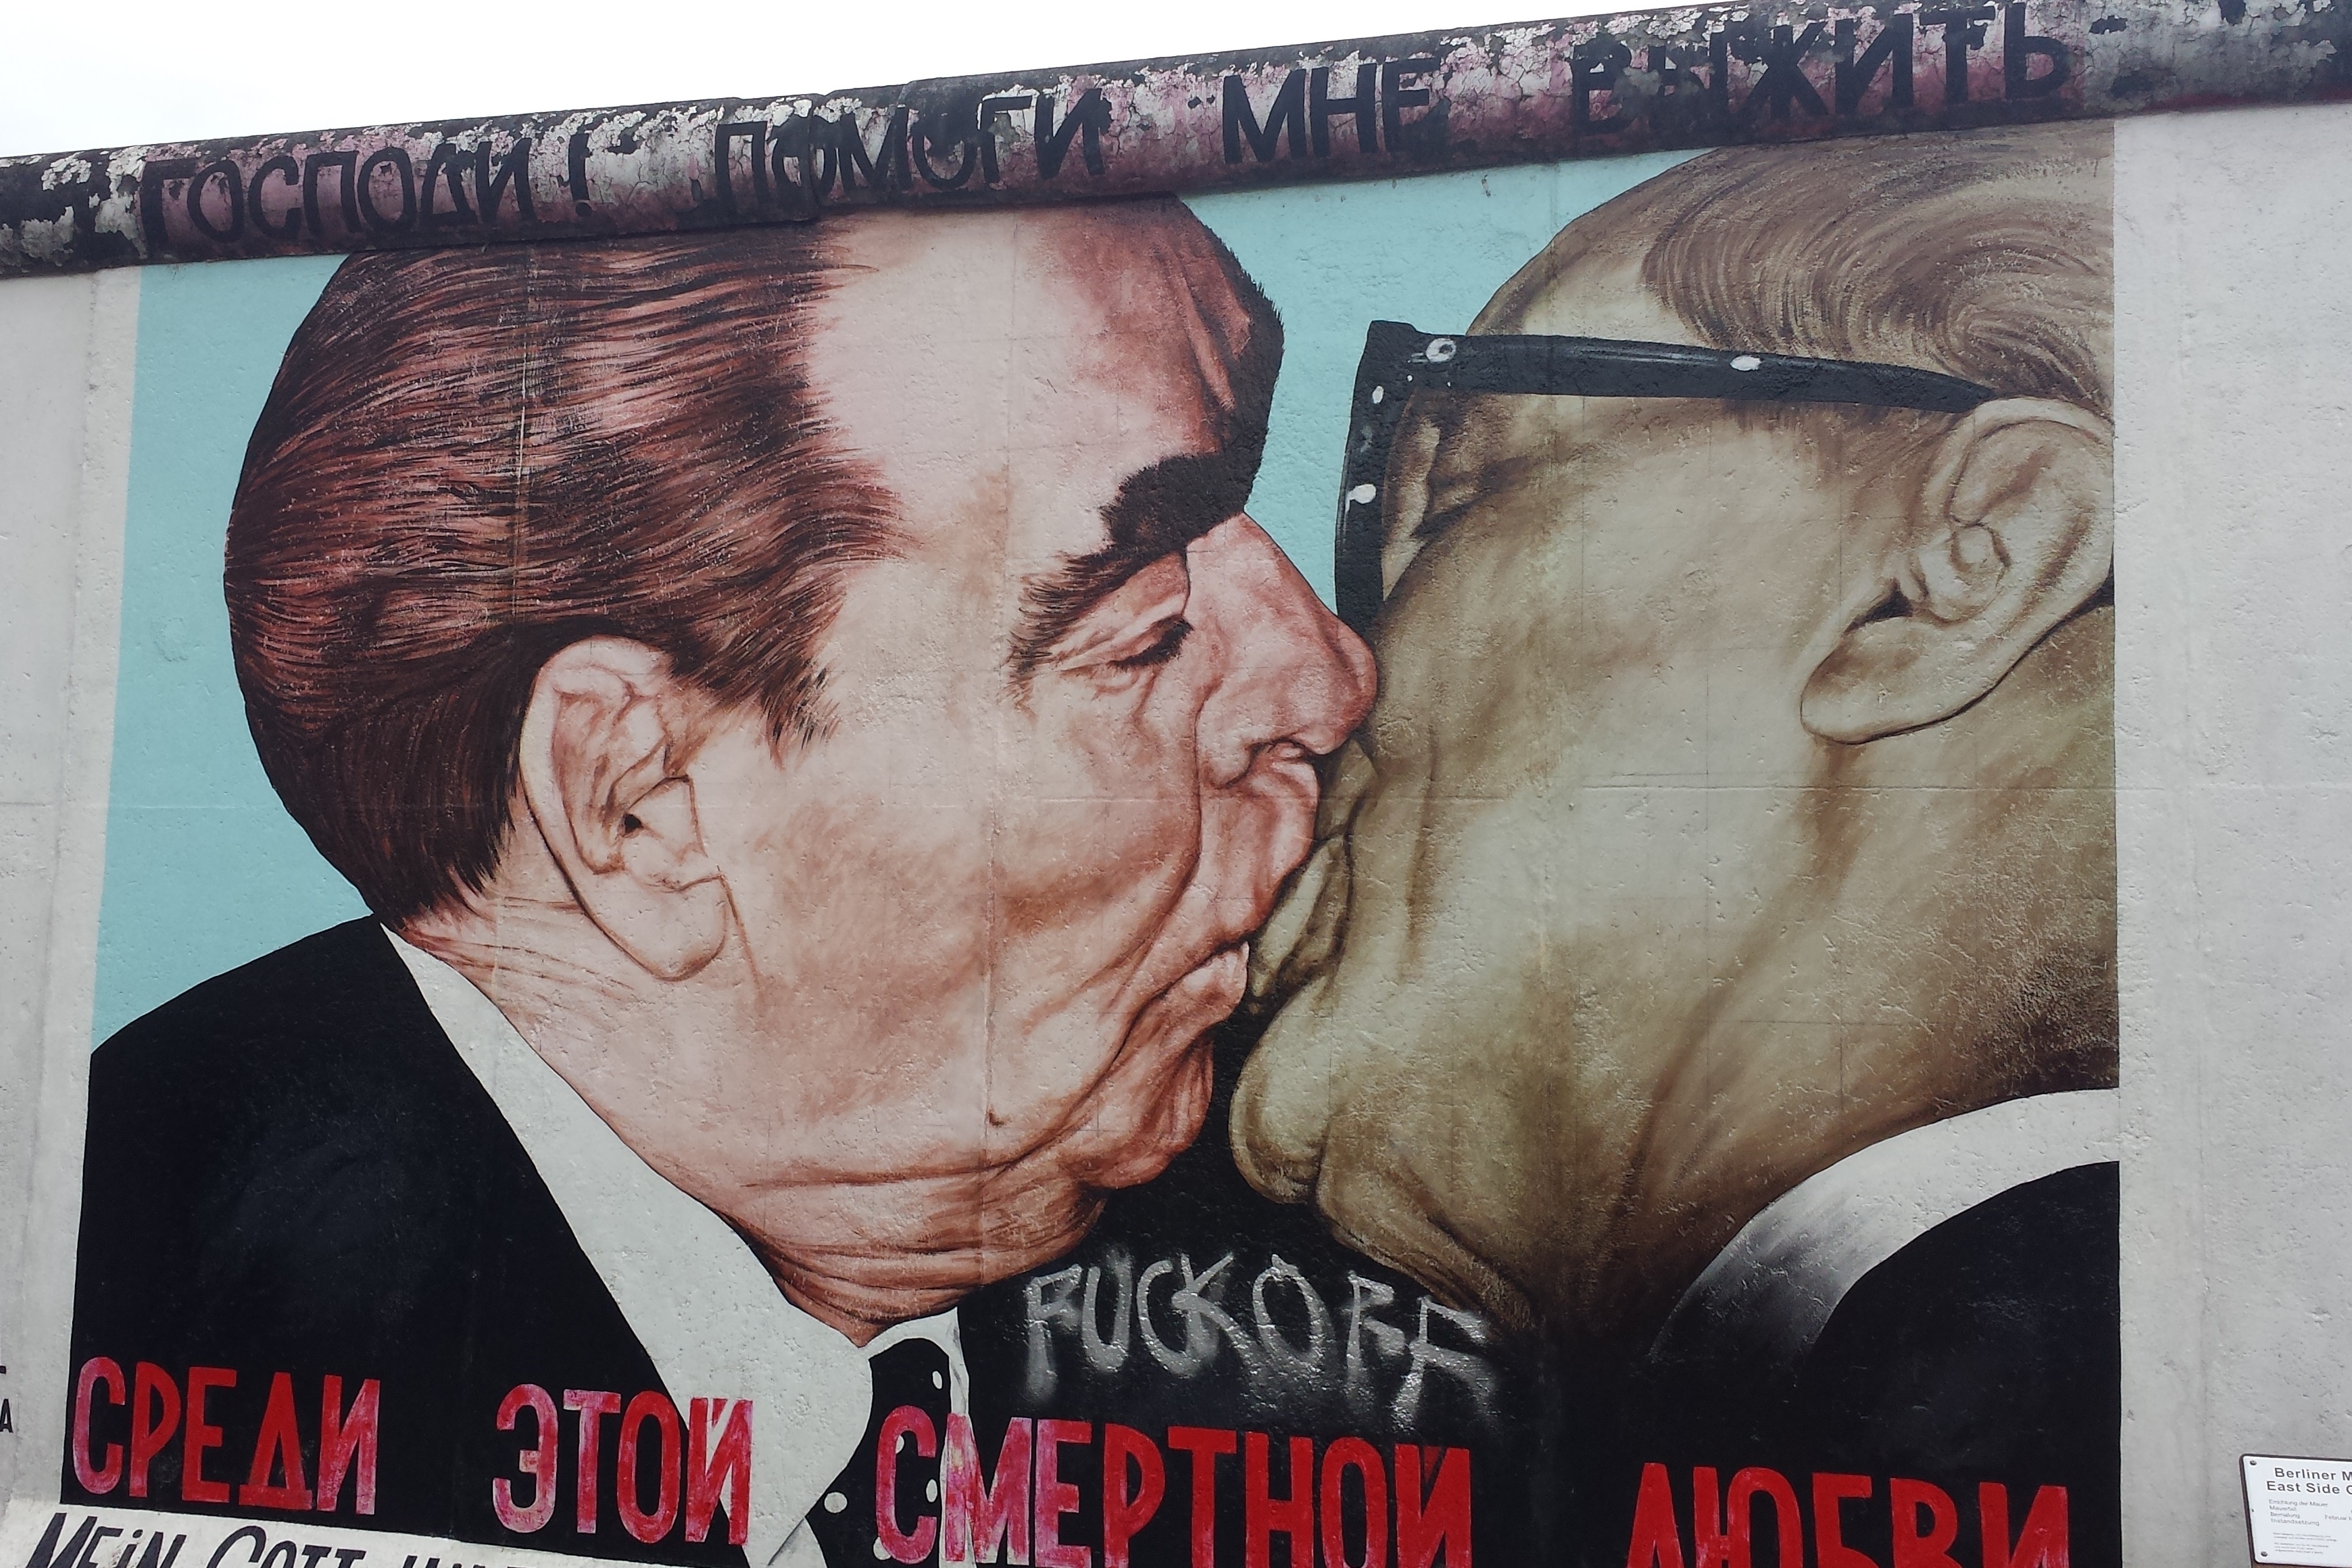 Крепкий поцелуй от Л.И. на Берлинской стене